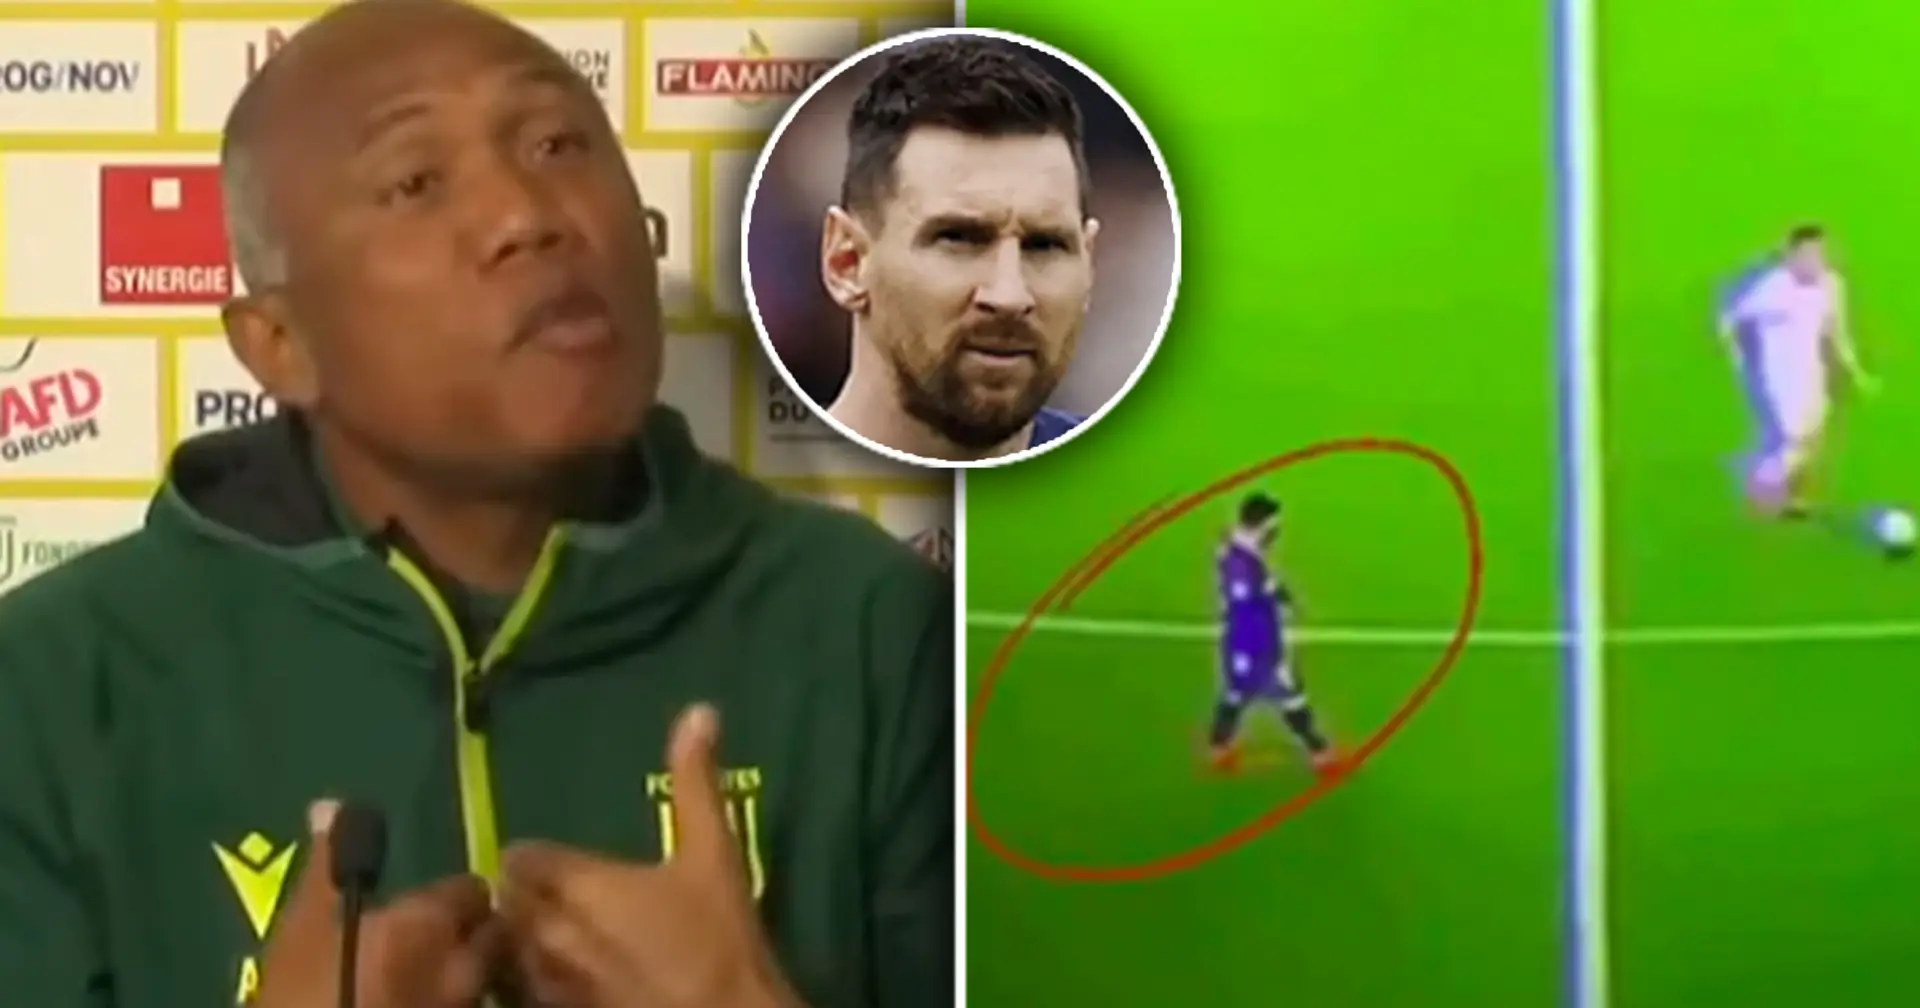 "Si je l'avais, je lui dirais de ne jamais défendre": le coach de Nantes livre une brillante interprétation du cliché de "Messi paresseux"